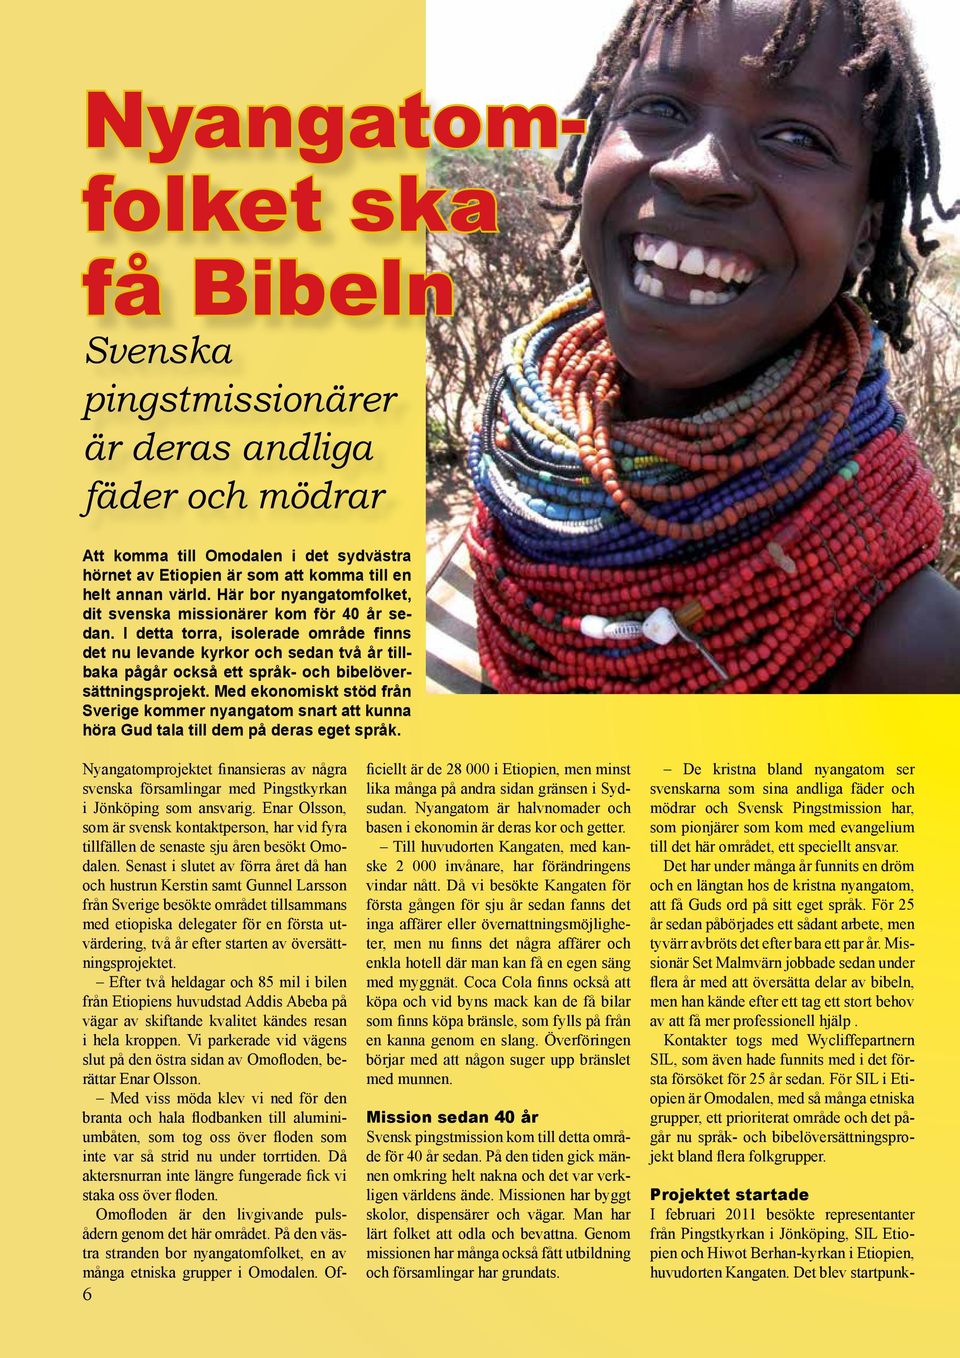 annan värld. Här bor nyangatomfolket, dit svenska missionärer kom för 40 år sedan.